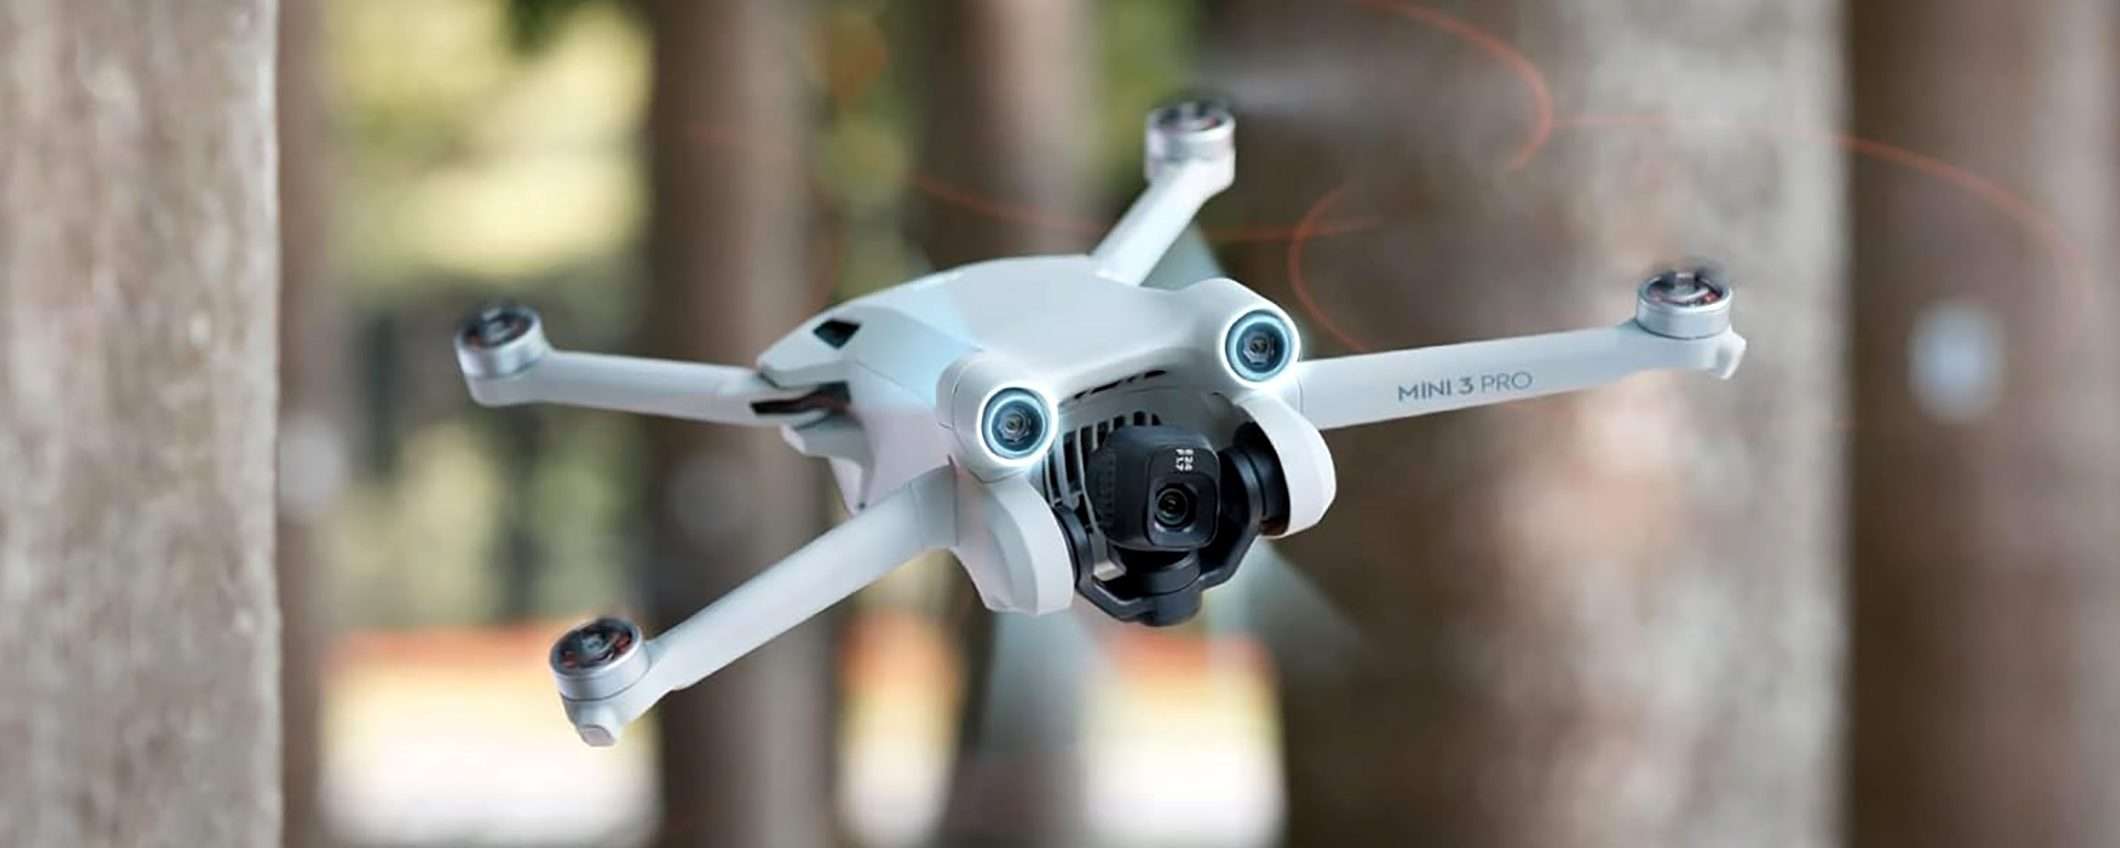 -173€ sul drone DJI Mini 3 Pro: lo SCONTO VOLA